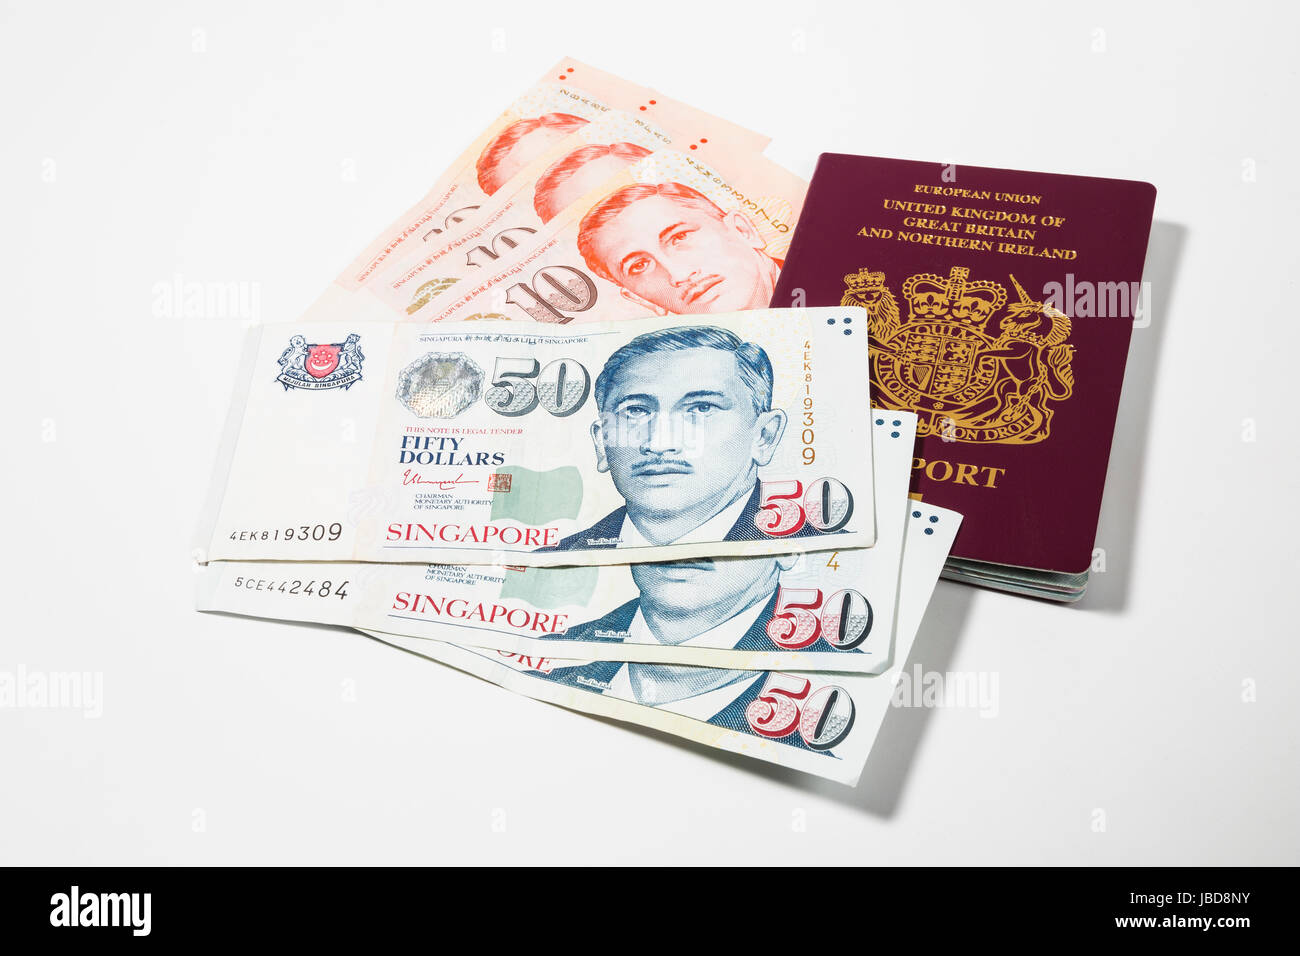 Singapore Dollars and UK Passport Stock Photo